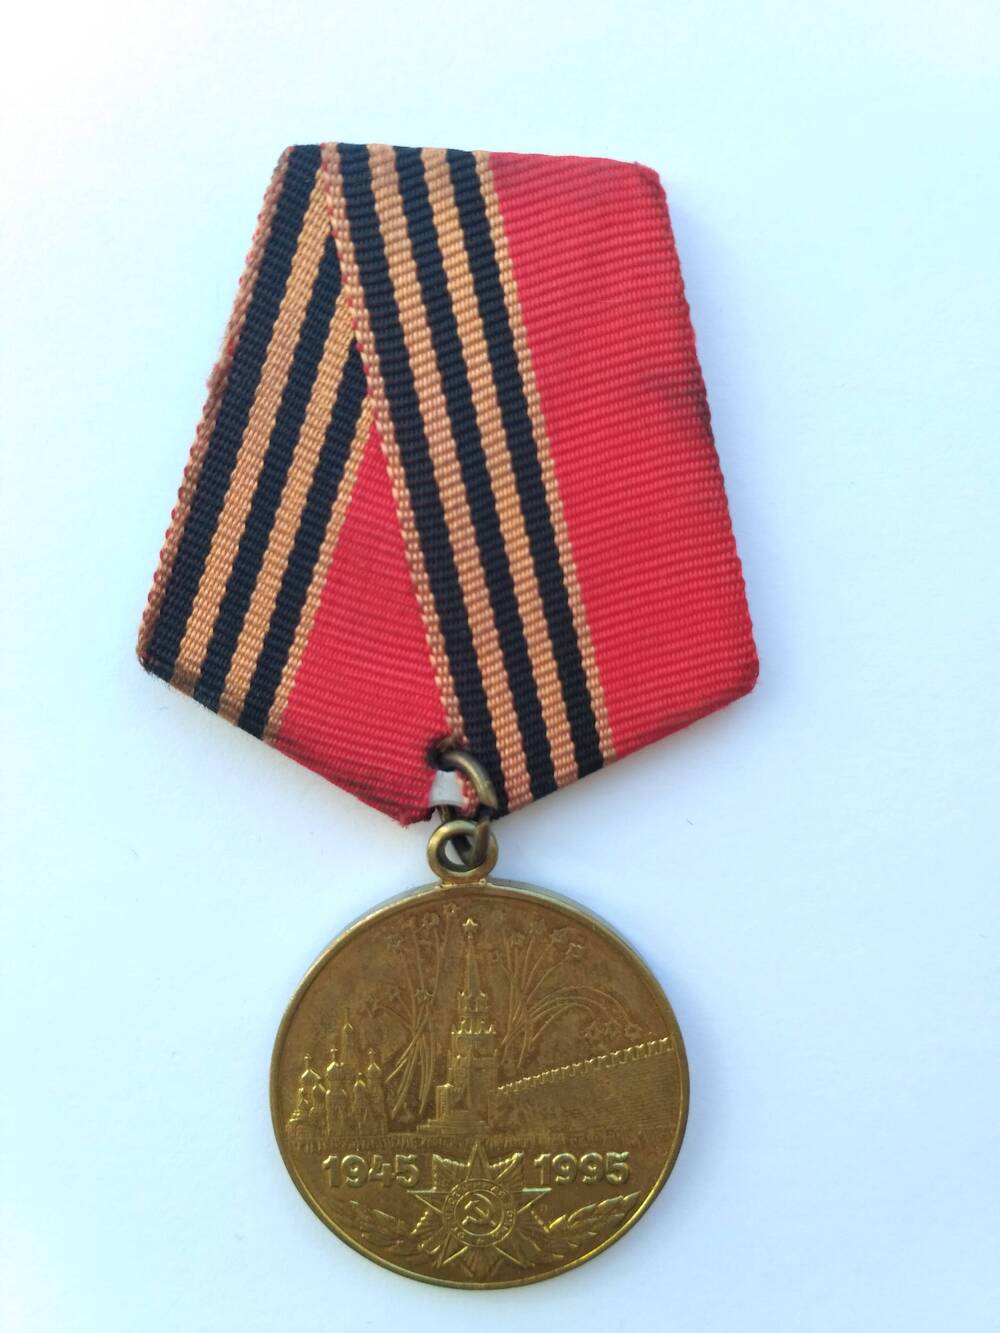 Юбилейная медаль «50 лет Победы в Великой Отечественной войне 1941—1945 гг.»